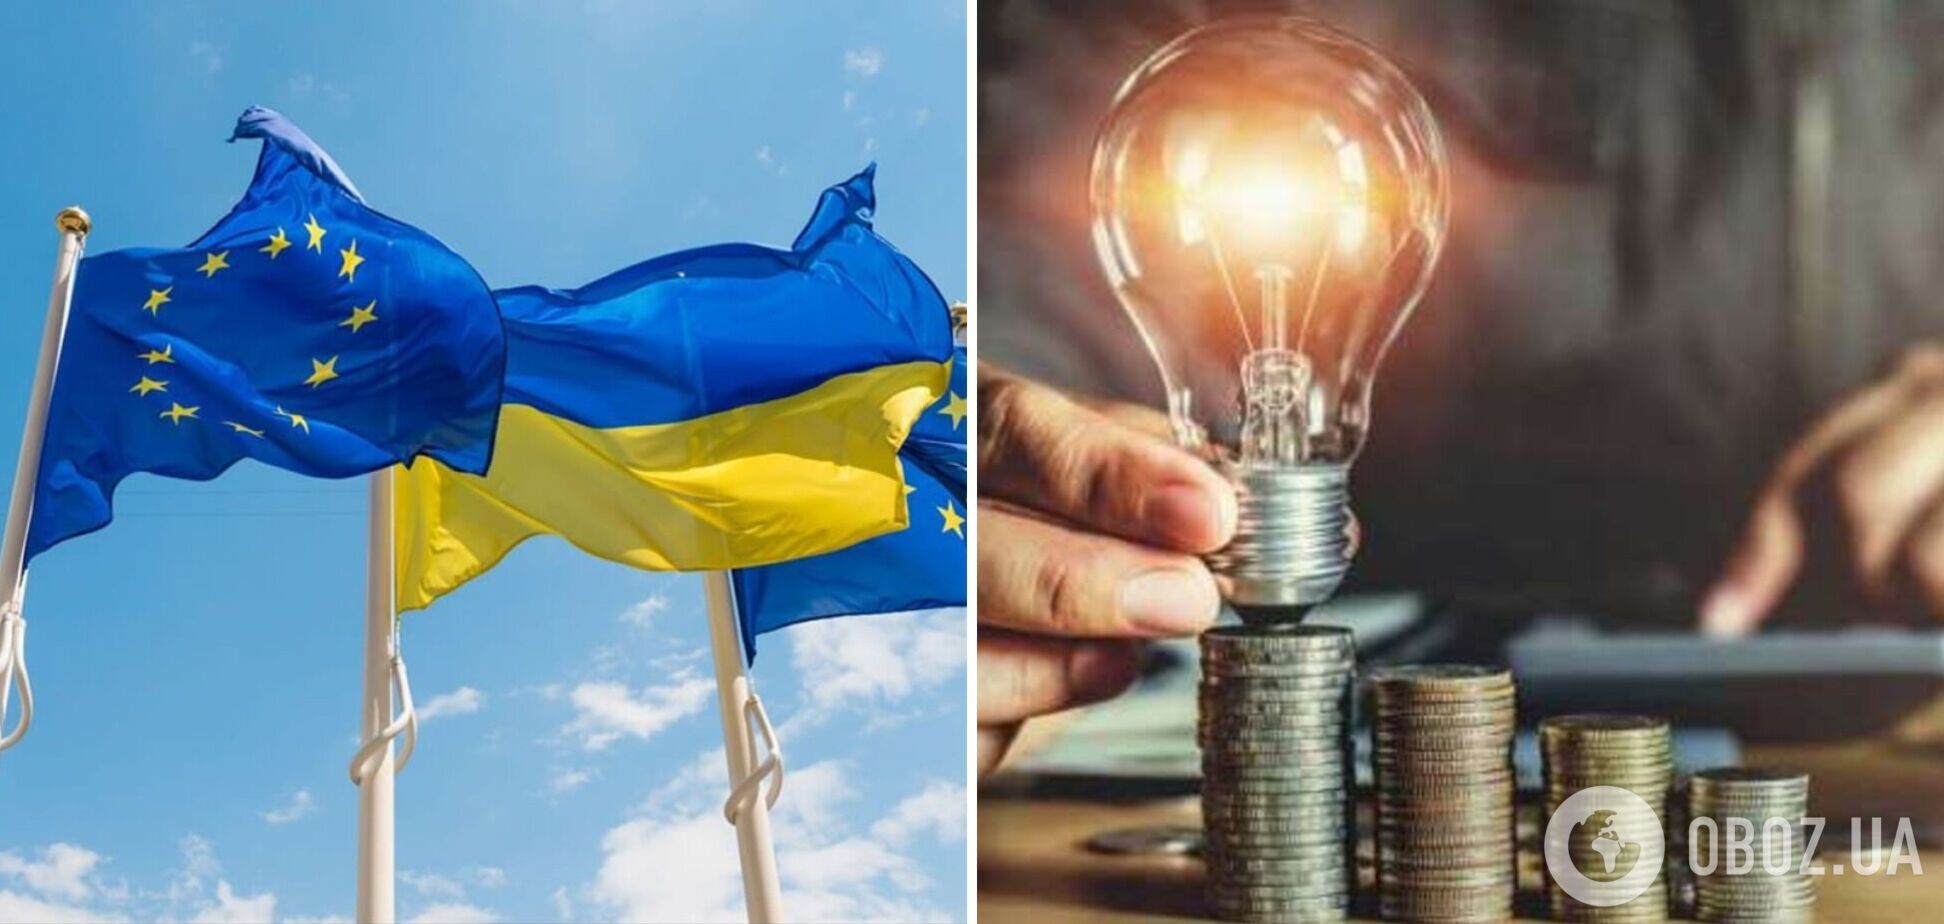 Вартість електроенергії в Україні у кілька разів нижча, ніж у європейських сусідів